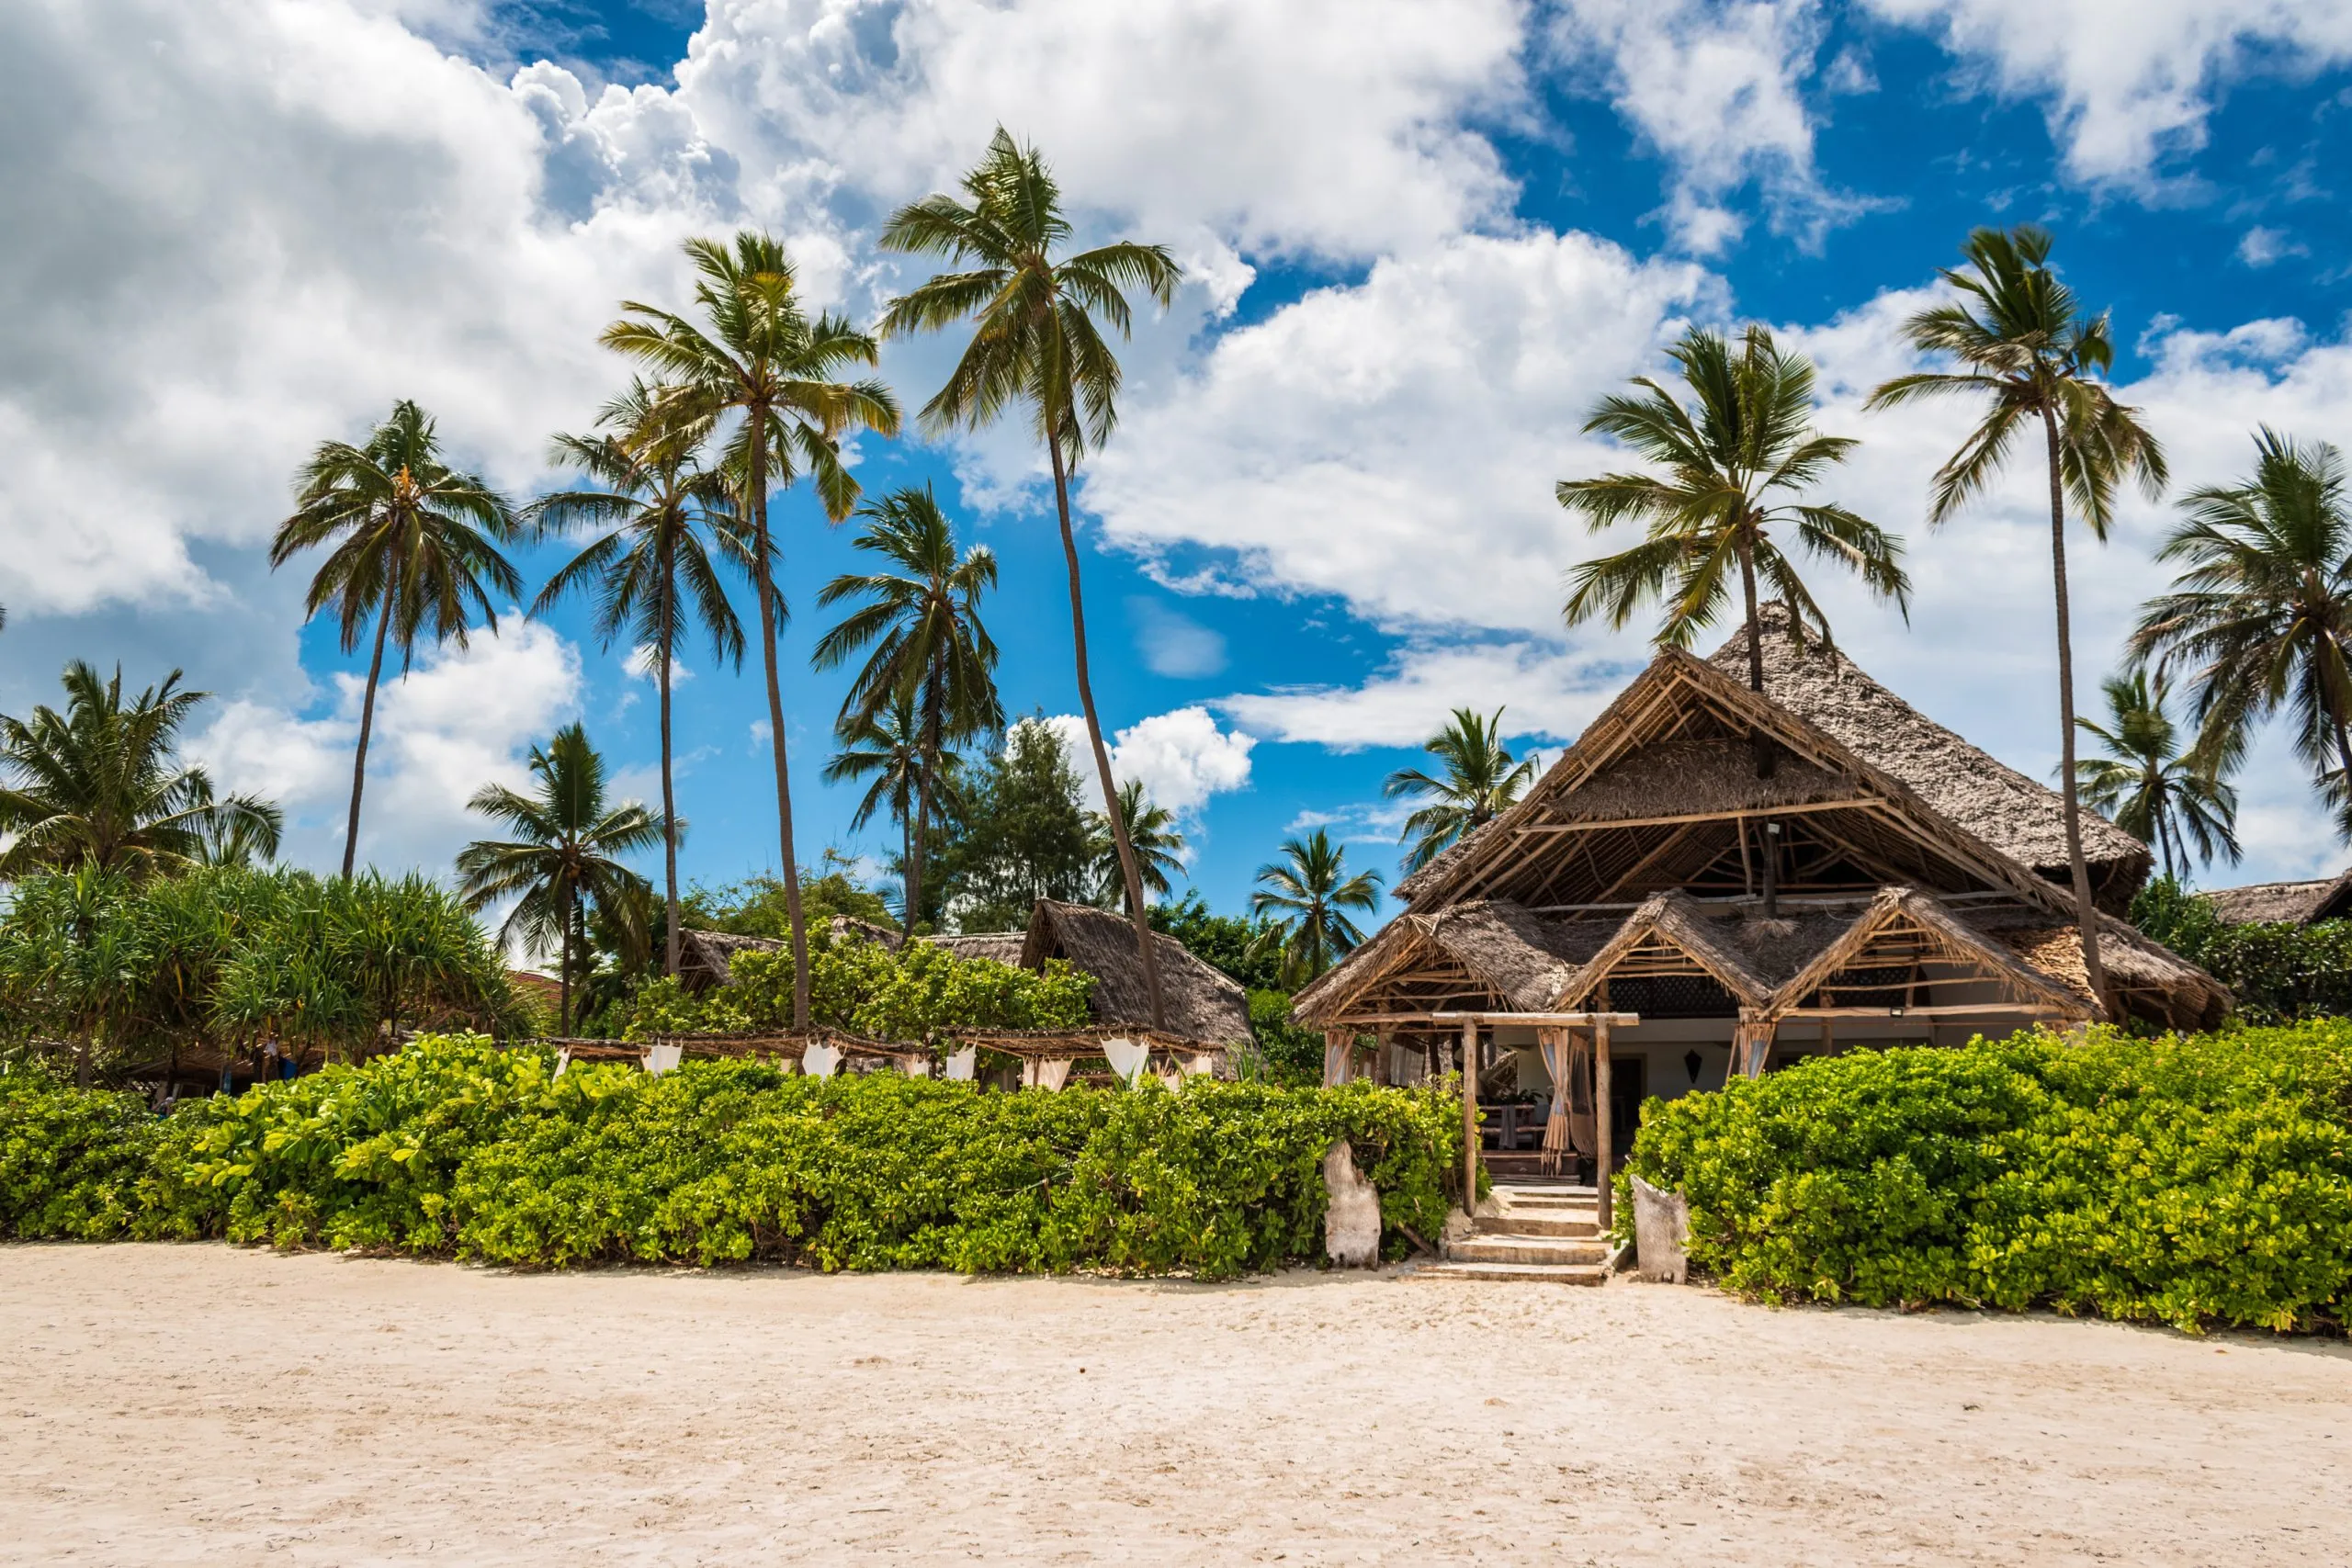 Vista da casa com telhado de colmo situada entre as palmeiras na praia de Matemwe, Zanzibar, Tanzânia, África